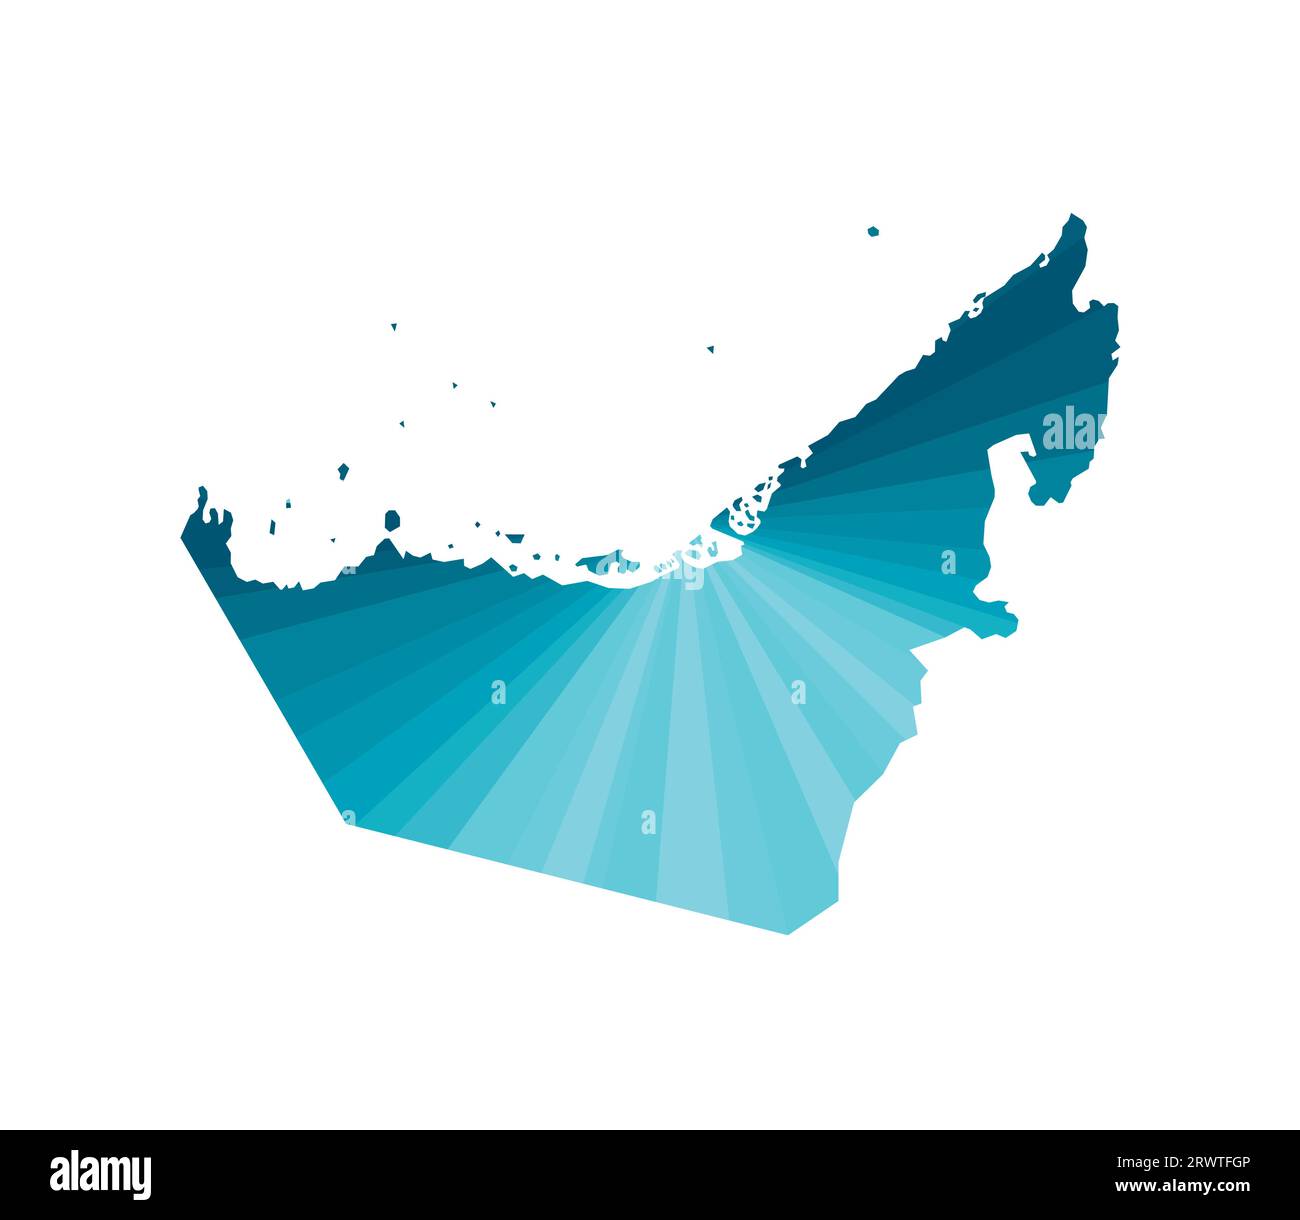 Vektor-isoliertes Illustrationssymbol mit vereinfachter blauer Silhouette der VAE (Vereinigte Arabische Emirate) Karte. Polygonaler geometrischer Stil. Weißer Hintergrund. Stock Vektor